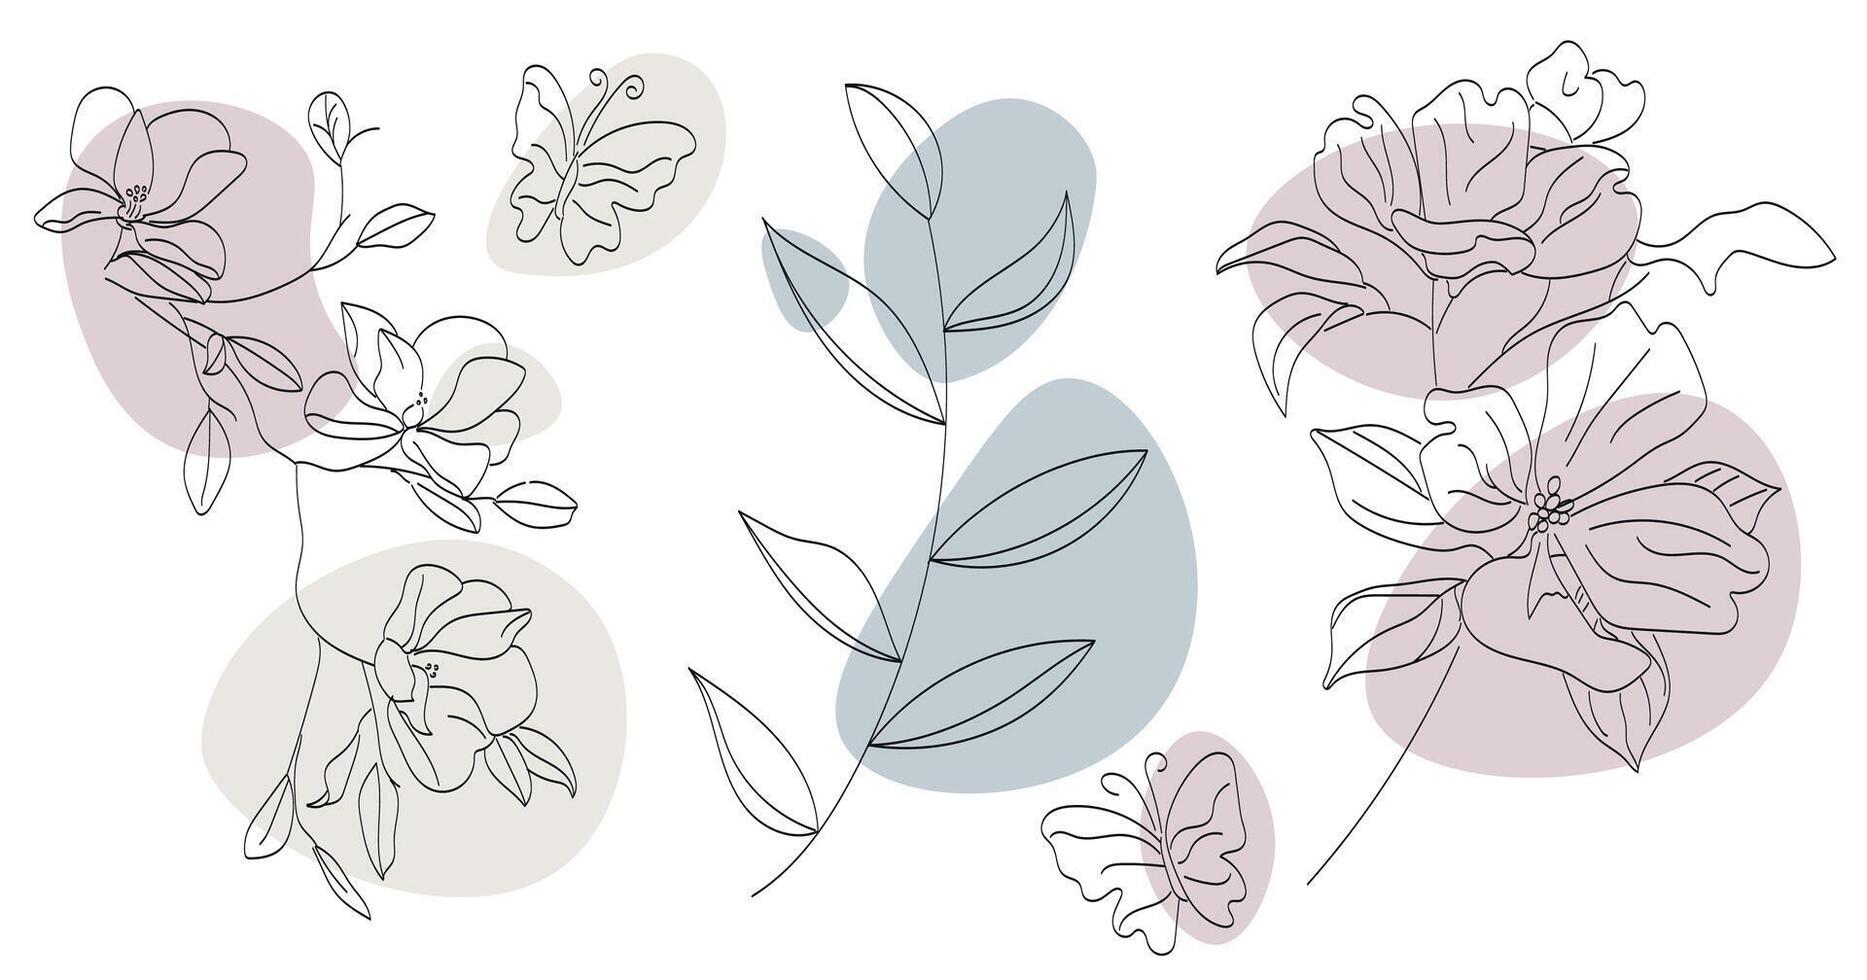 impostato di astratto minimalista lineare impianti, fiori e farfalle, nel scarabocchio stile, mano disegnato, vettore illustrazione